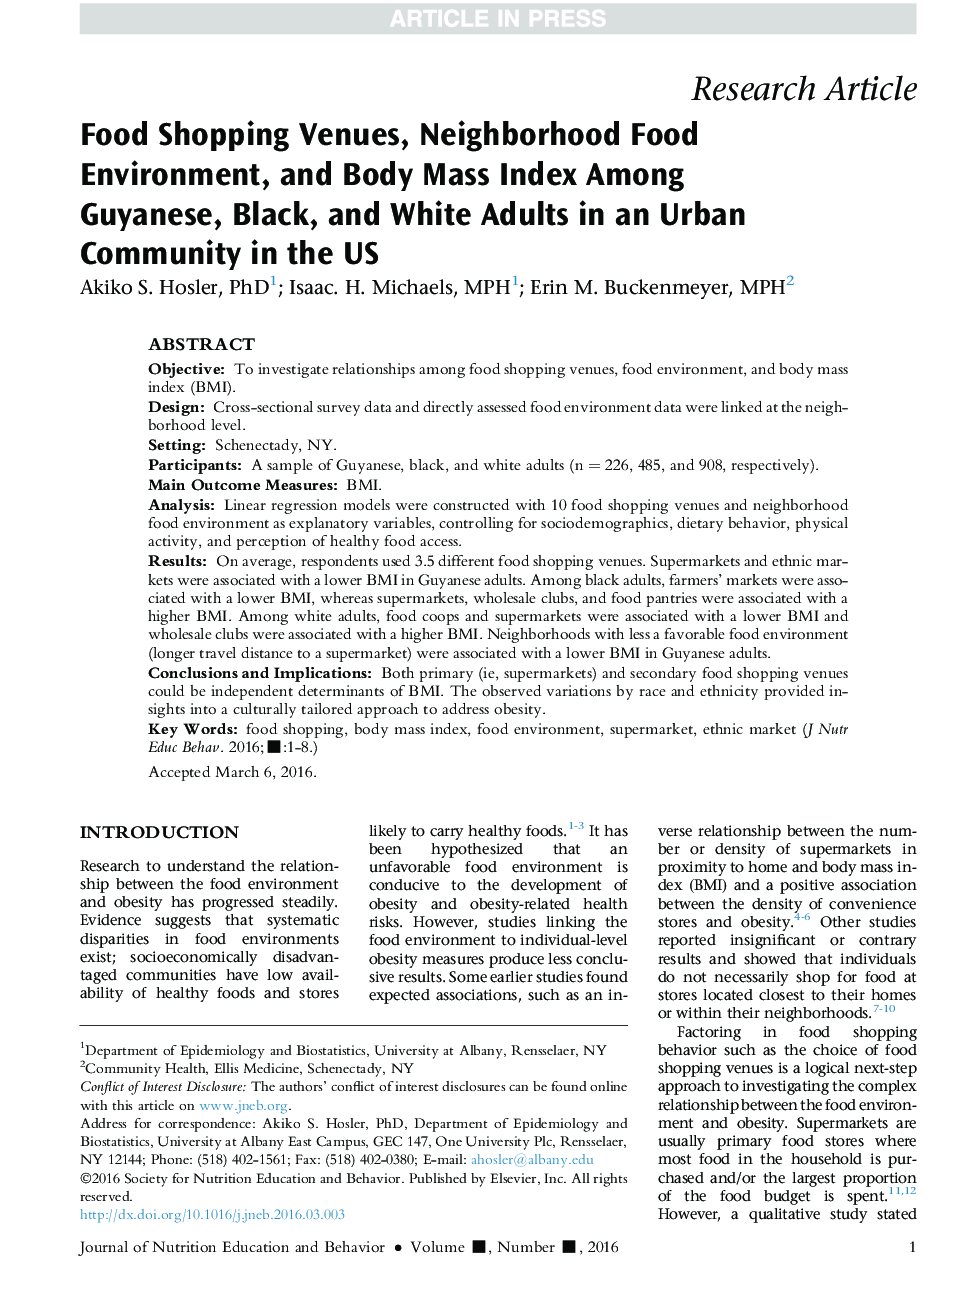 مراکز خرید غذا، محیط غذایی محله و شاخص توده بدنی در میان جوانان گایان، سیاه و سفید در یک جامعه شهری در ایالات متحده 